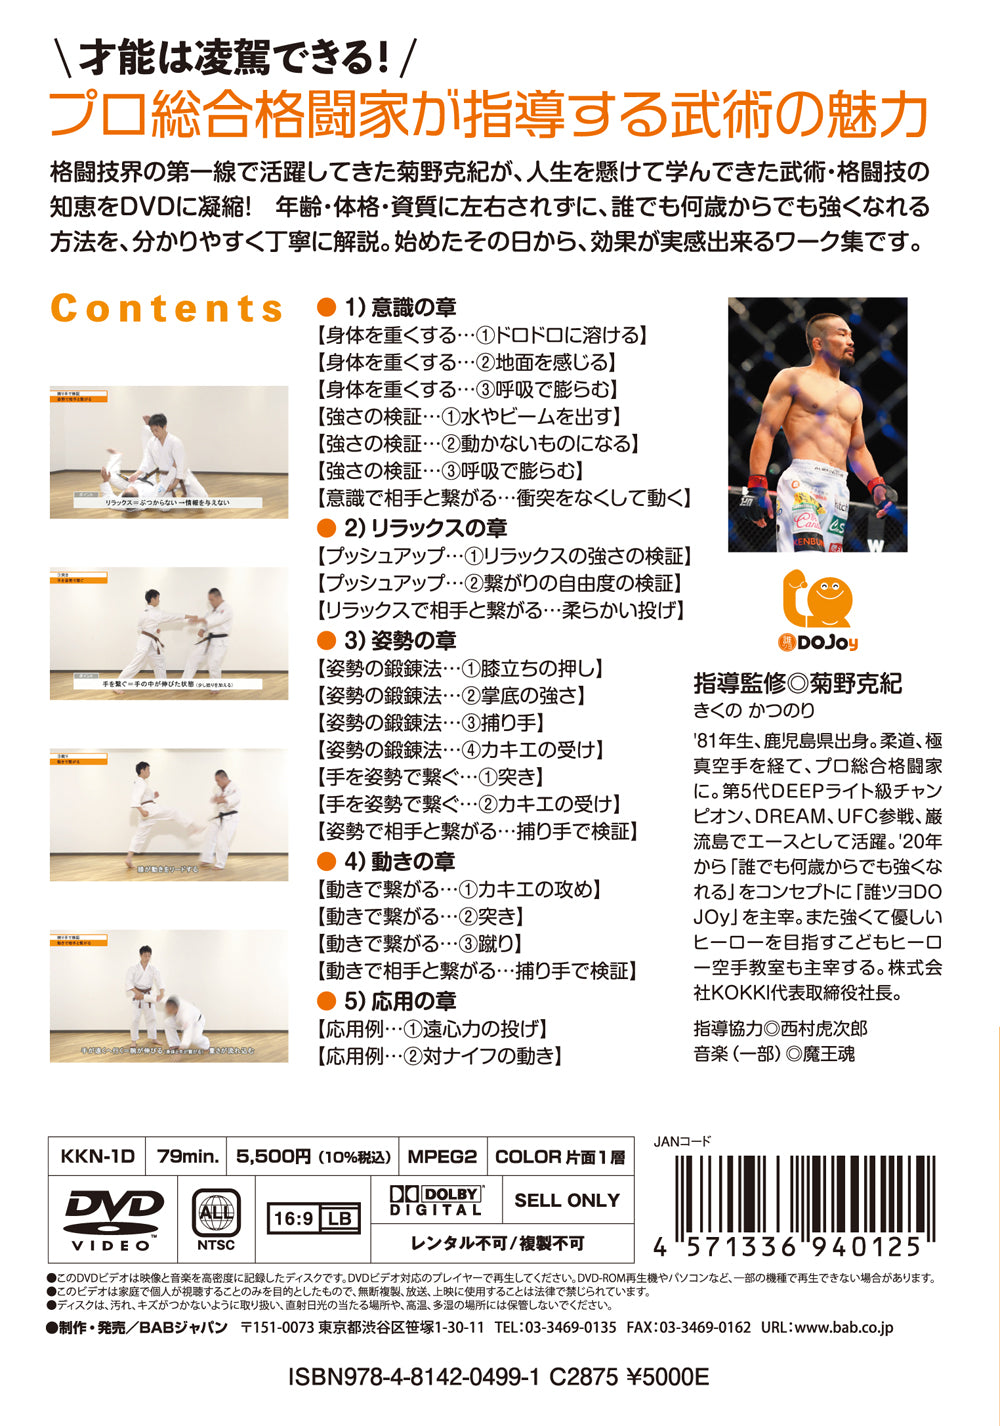 Get Strength with Bujutsu DVD by Katsunori Kikuno